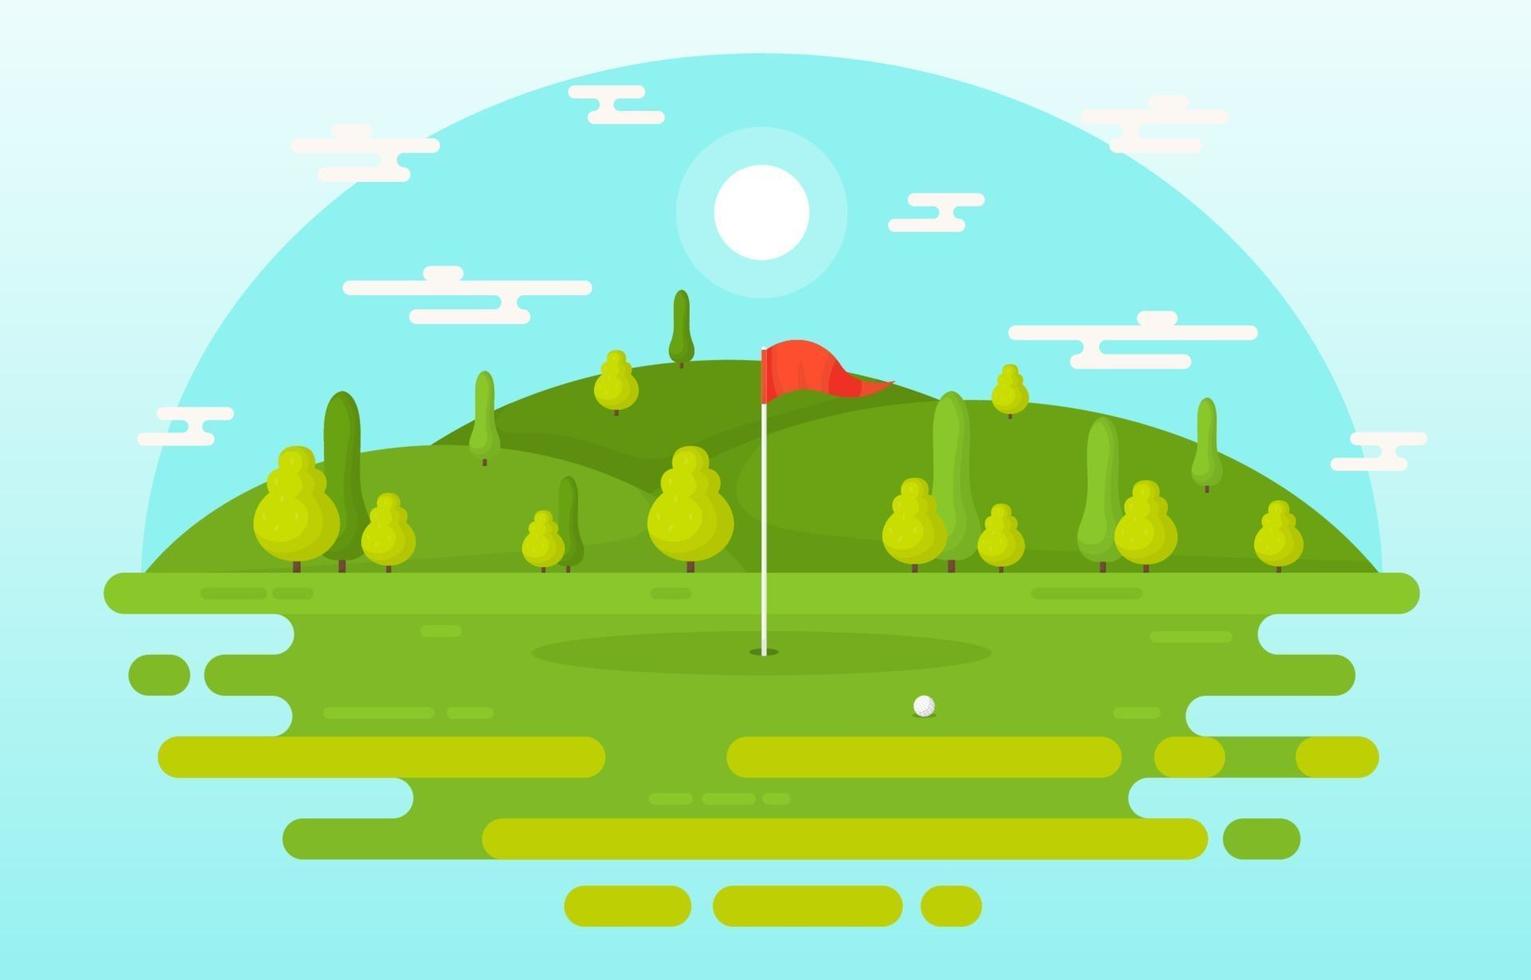 campo de golfe com bandeira vermelha, árvores e bola de golfe vetor